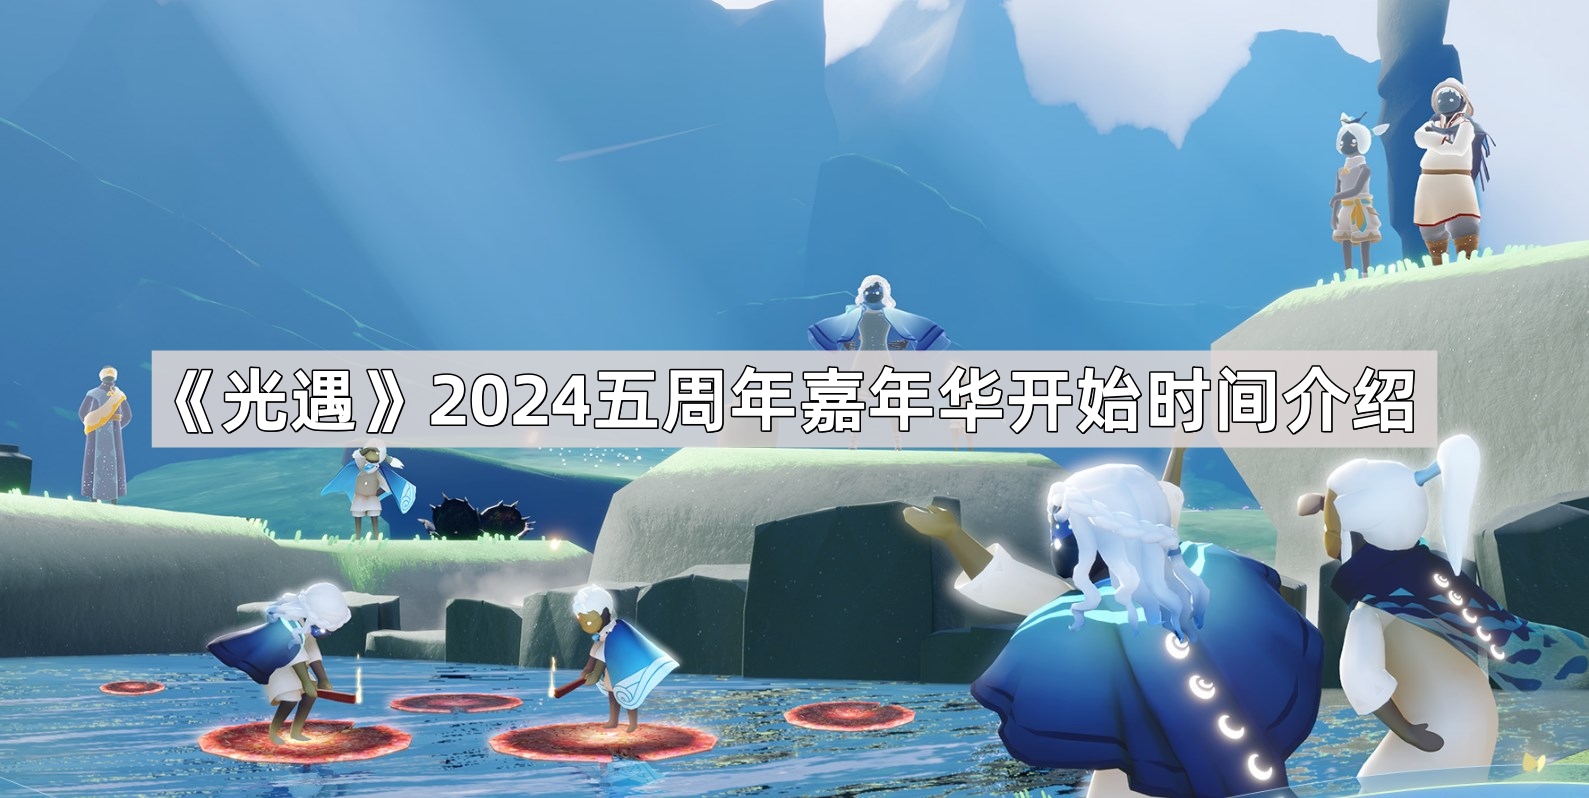 《光遇》2024五周年嘉年华开始时间介绍